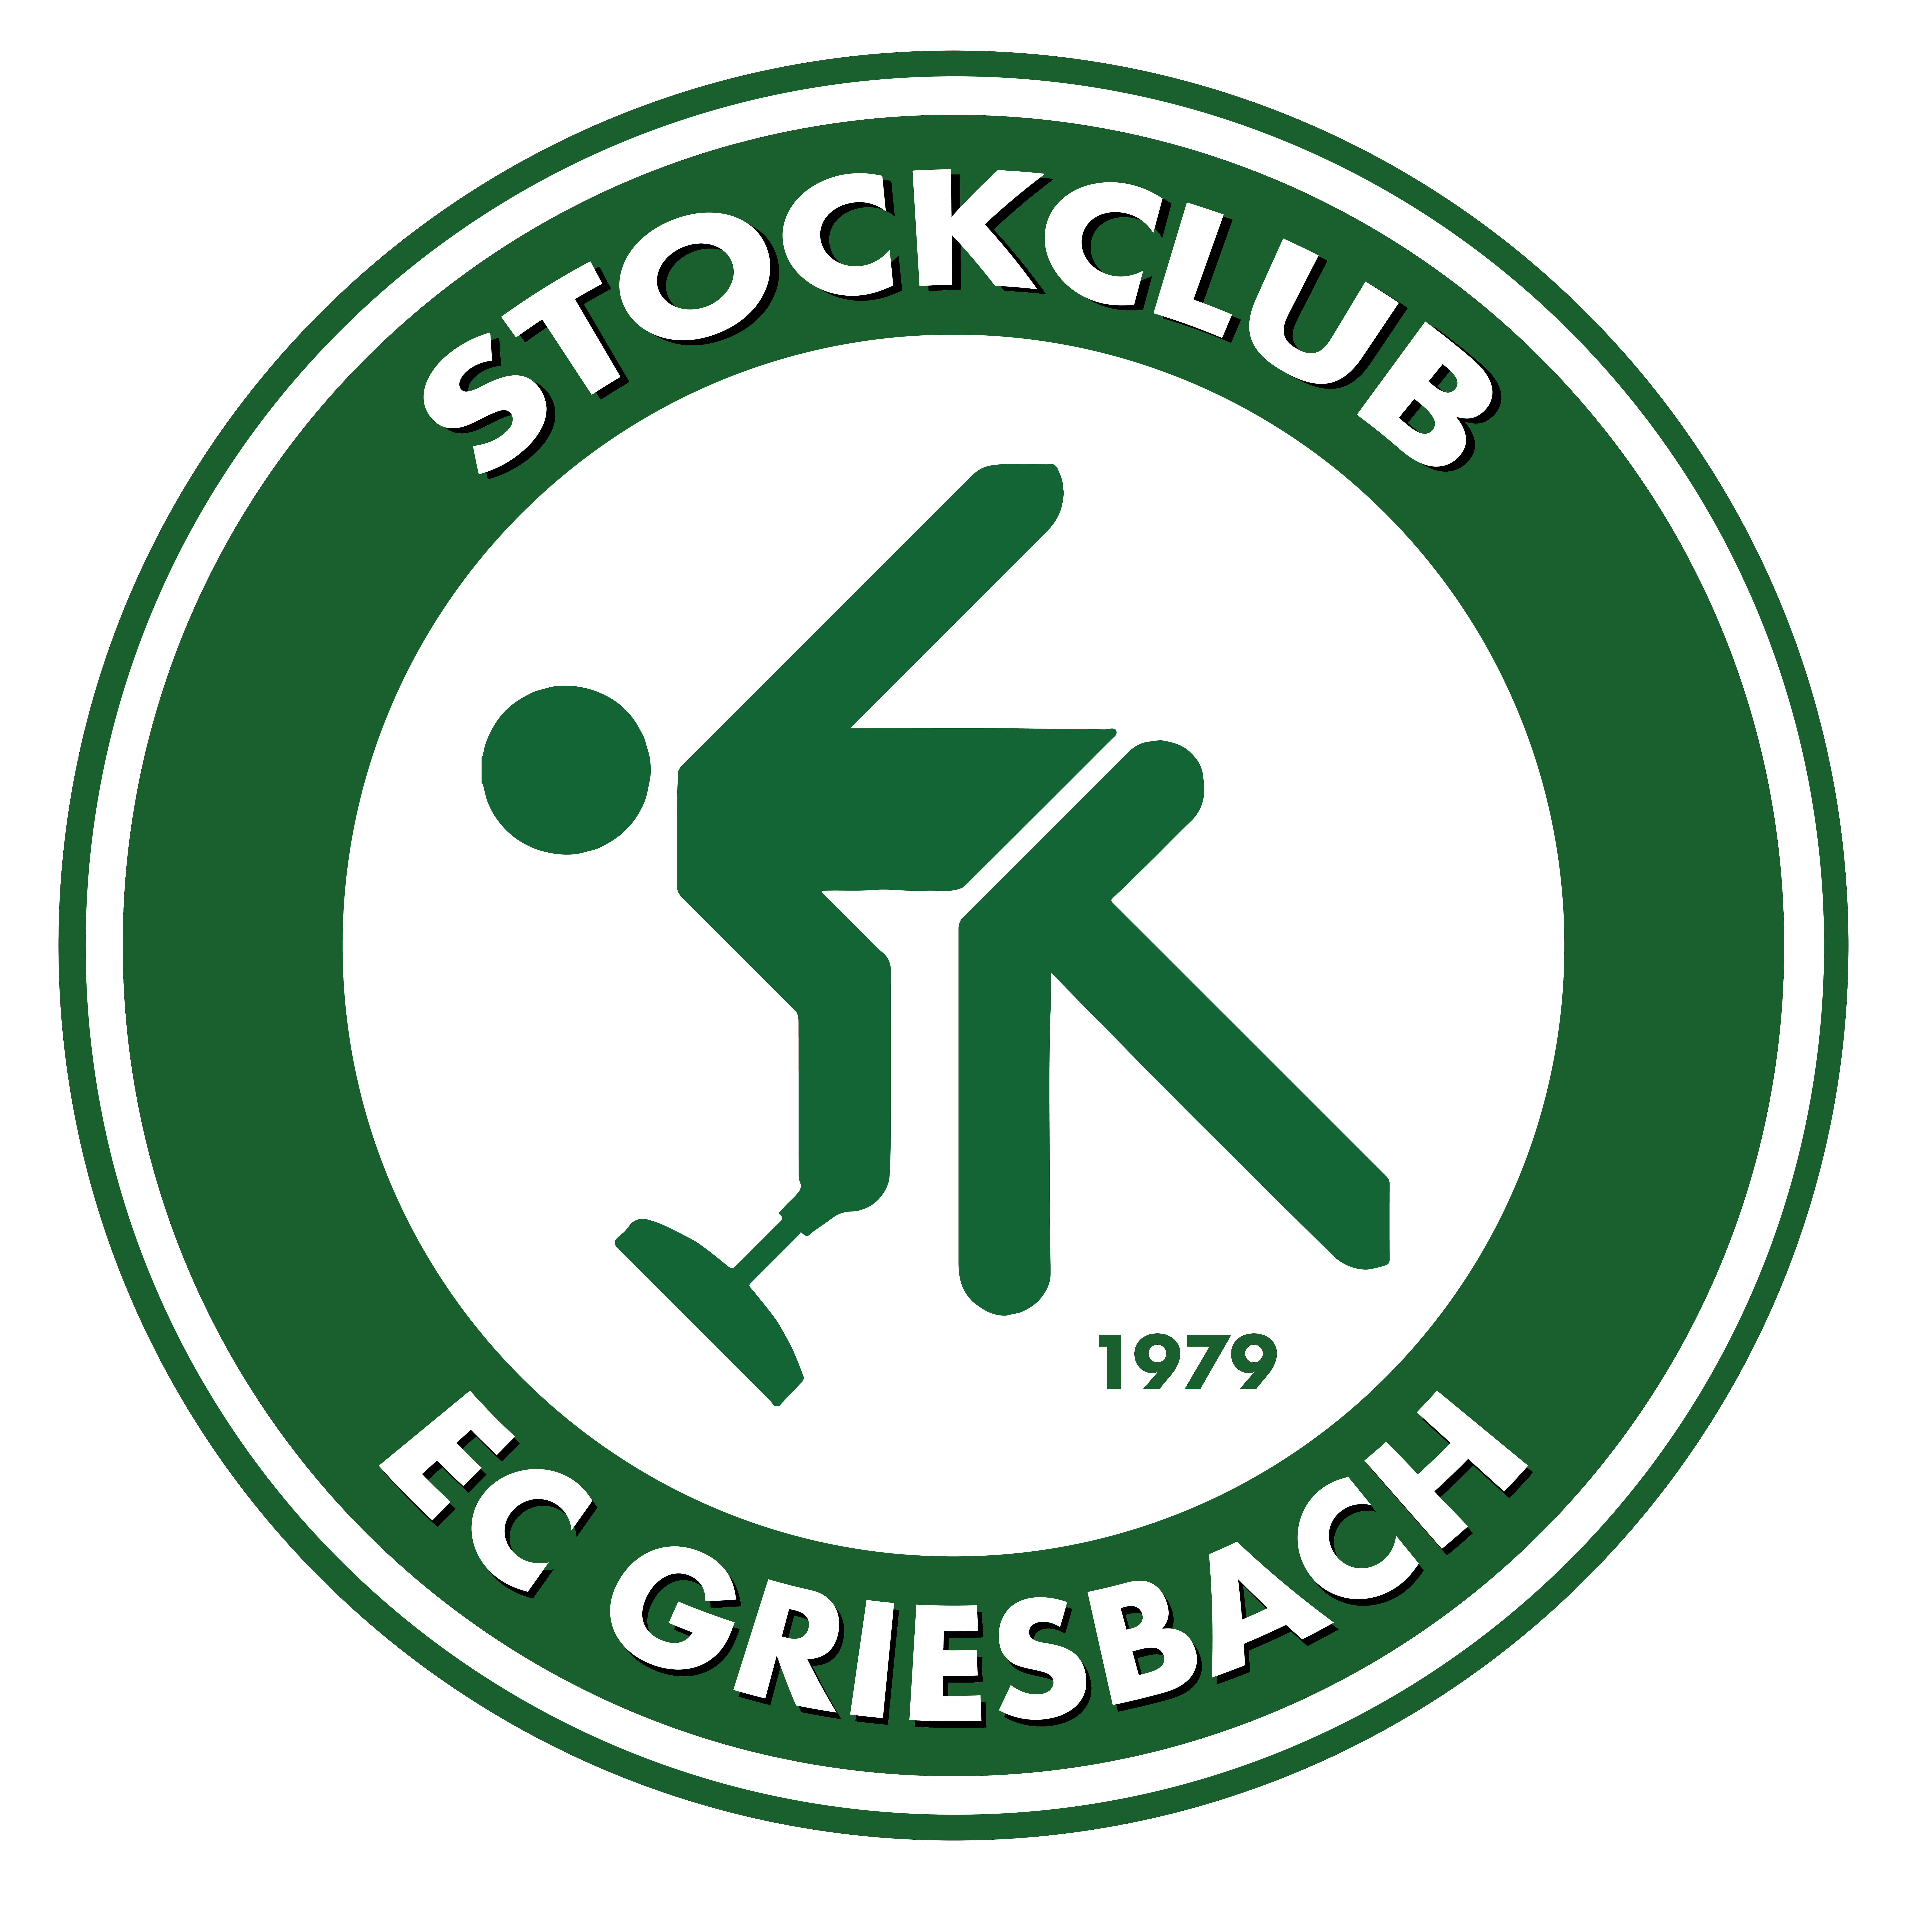 EC Griesbach Shop